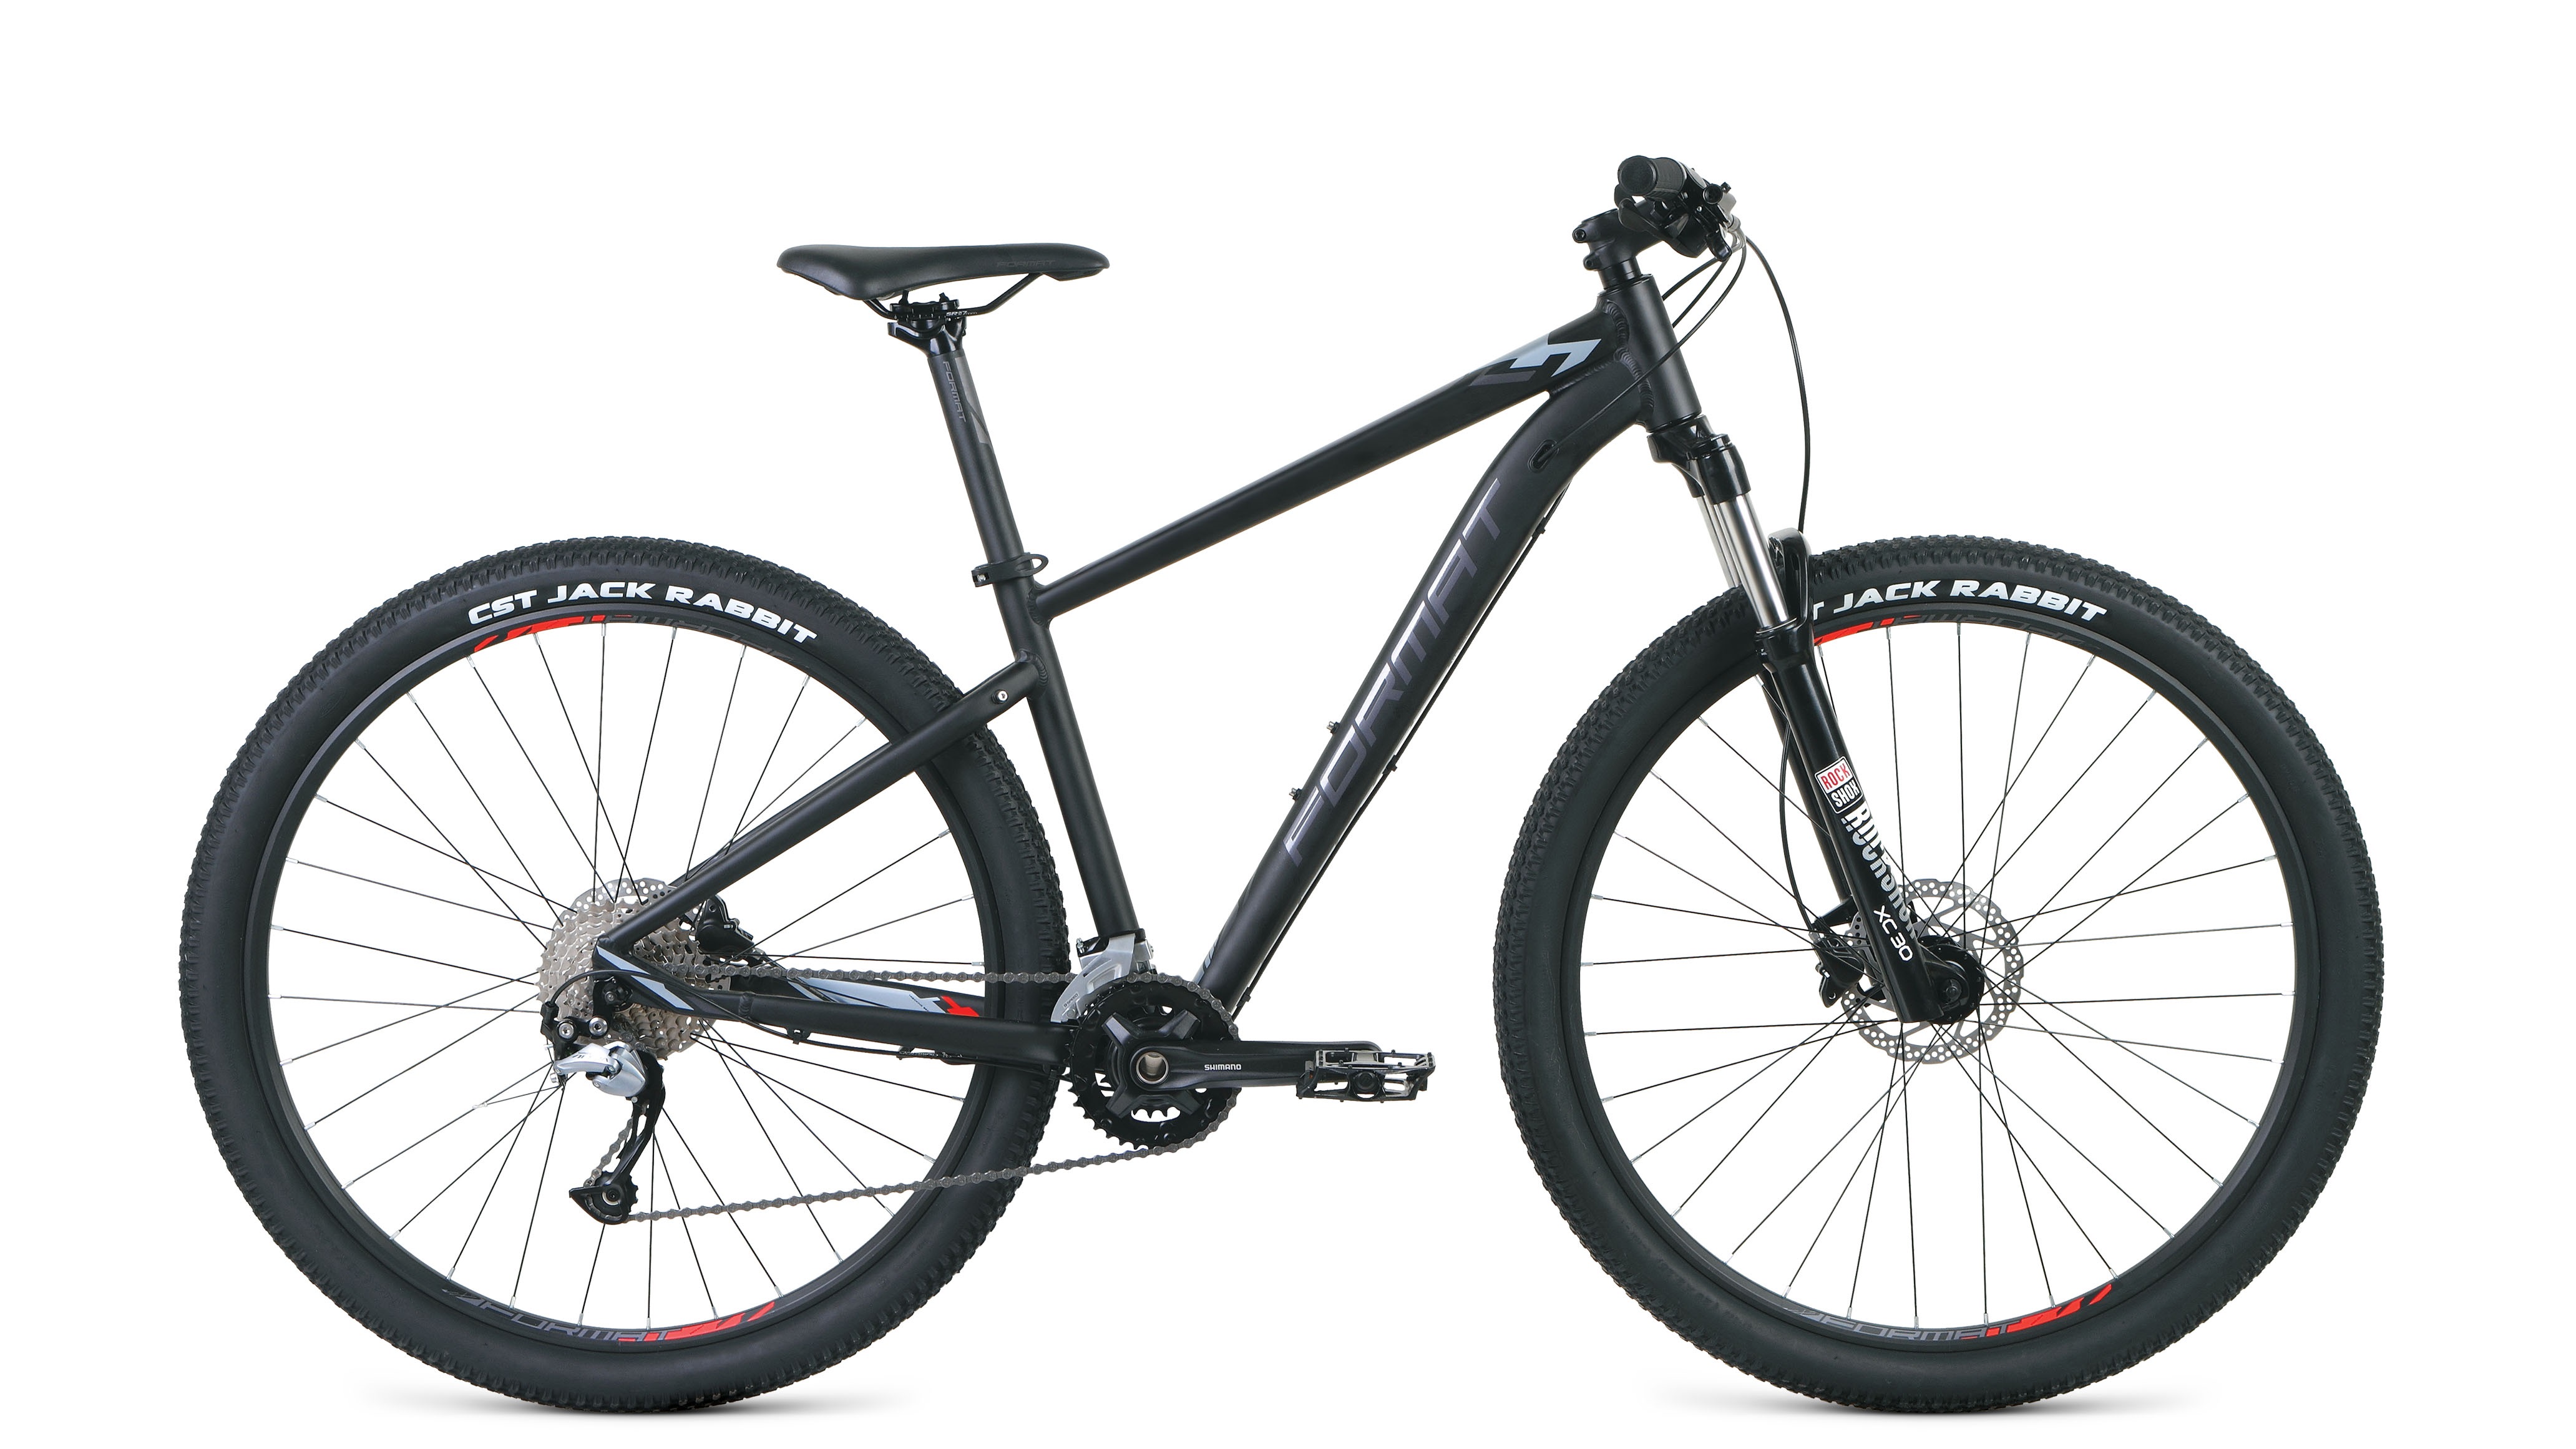 Велосипед Format 1411 29 (2020)